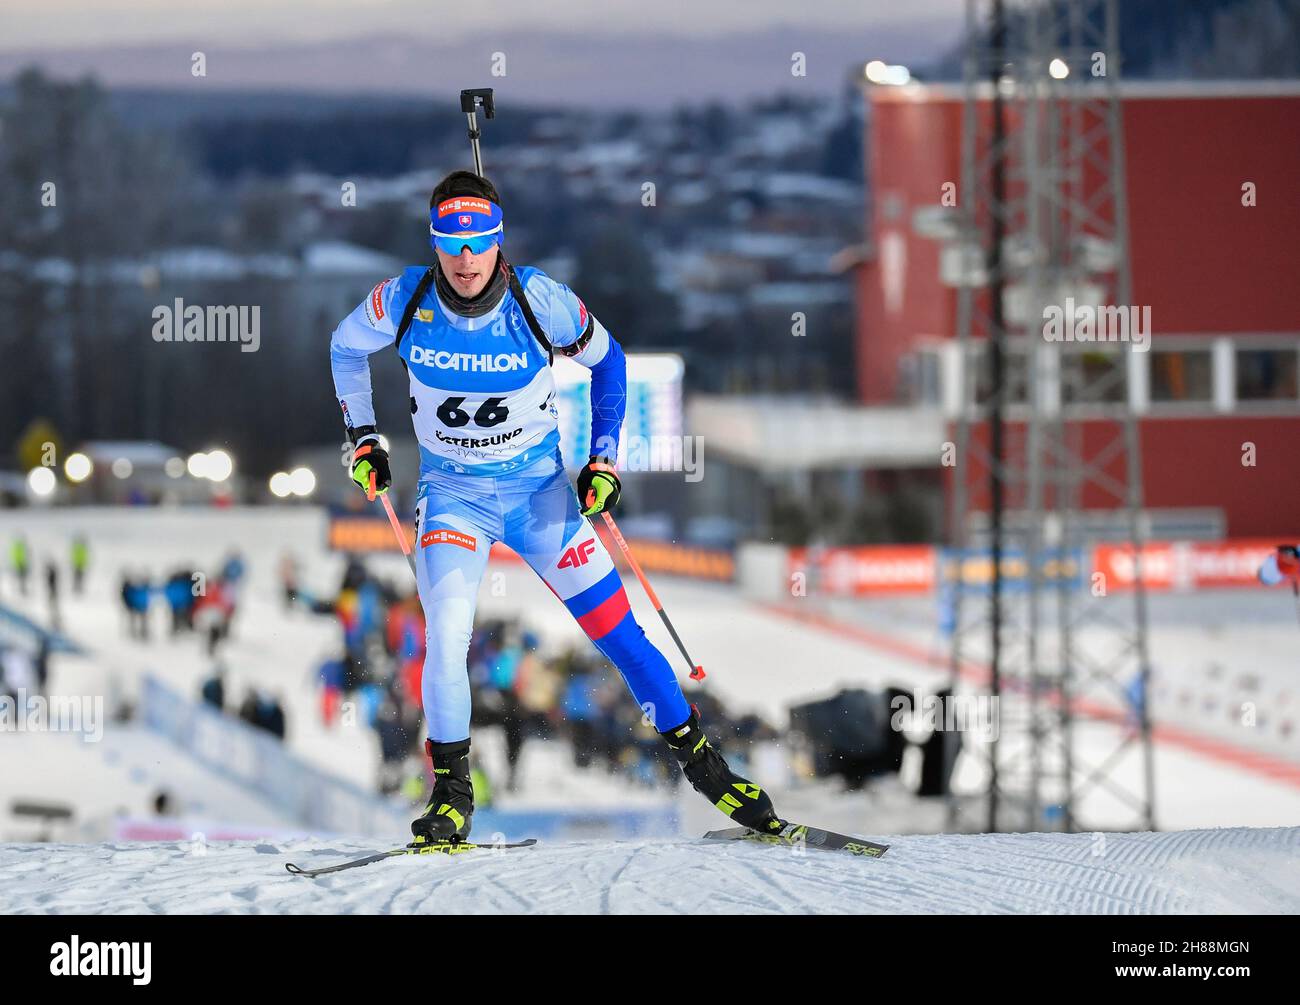 Maten Baloga de Slovaquie en action pendant la course de sprint de 10 km masculin à la saison de biathlon de la coupe du monde de l'IBU, ouverture au stade de ski d'Ostersund à Ostersund, dans le nord de la Suède, le 28 novembre 2021.Photo: Anders Wiklund / TT / code 10040 *** SUÈDE OUT *** Banque D'Images